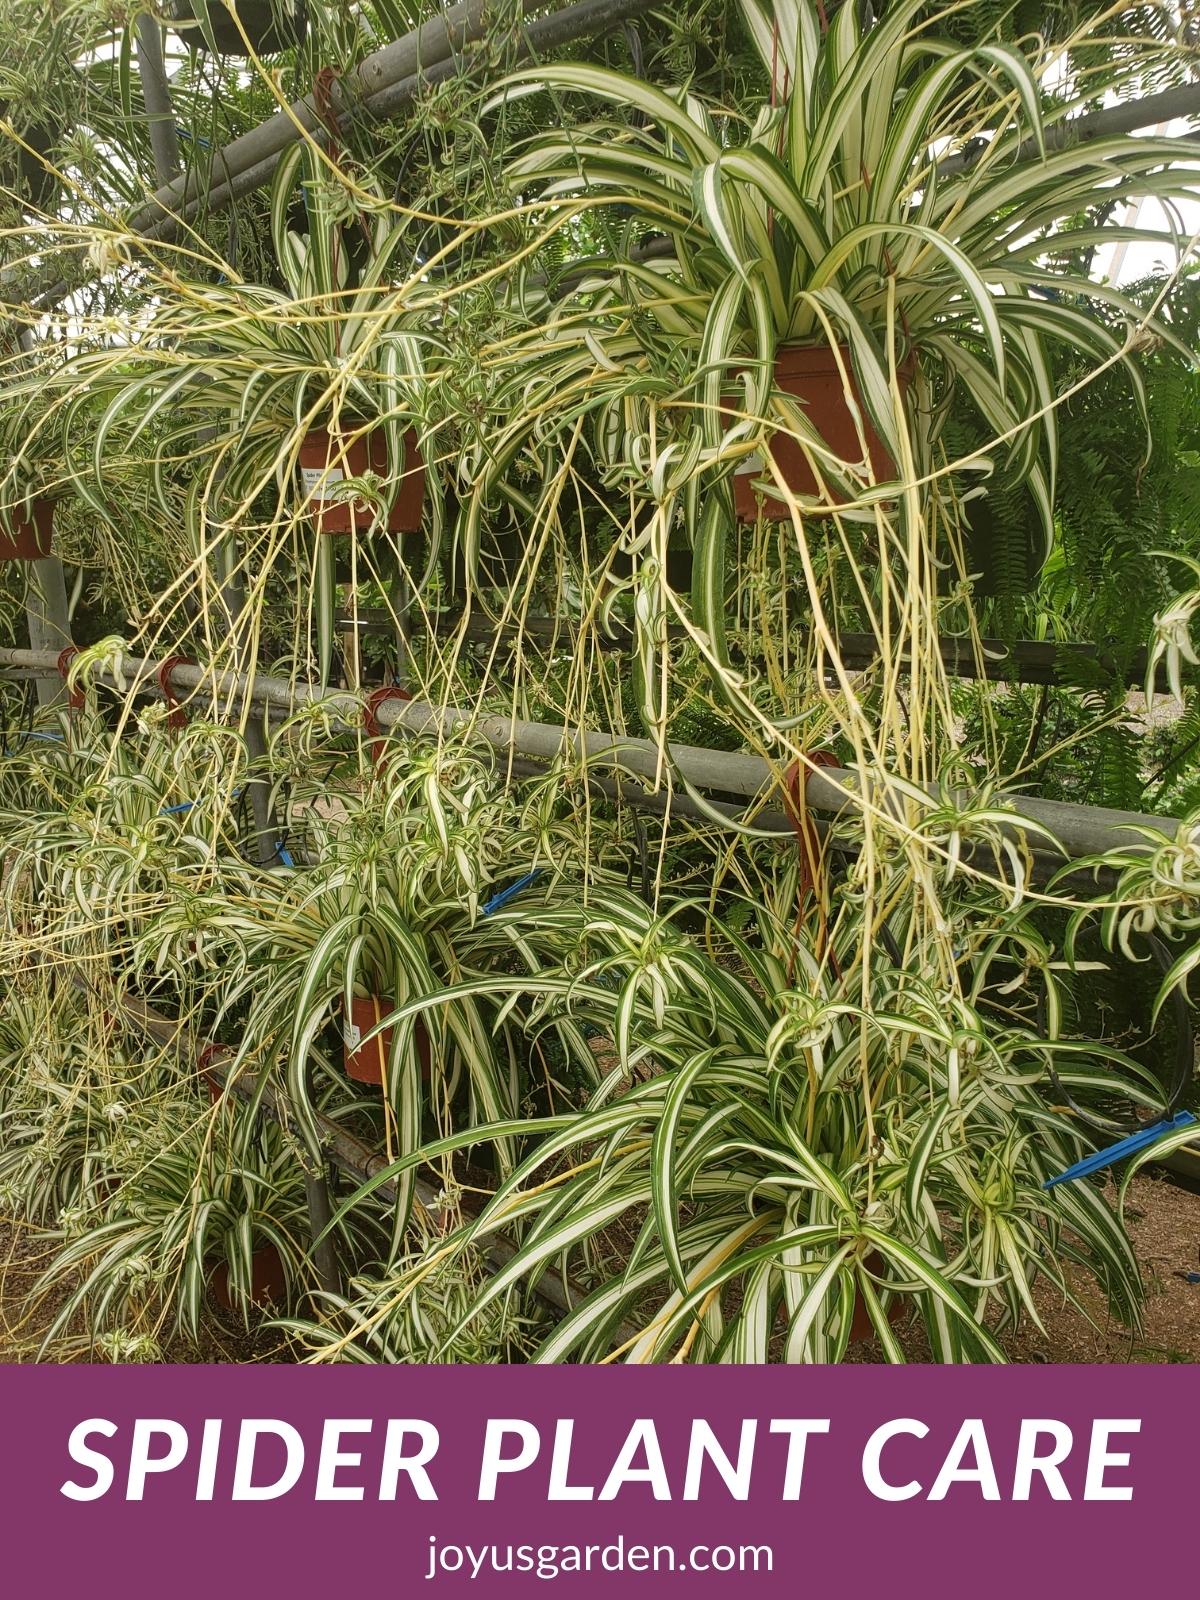  ပင့်ကူအပင်စောင့်ရှောက်မှု- Chlorophytum Comosum ကြီးထွားနည်း